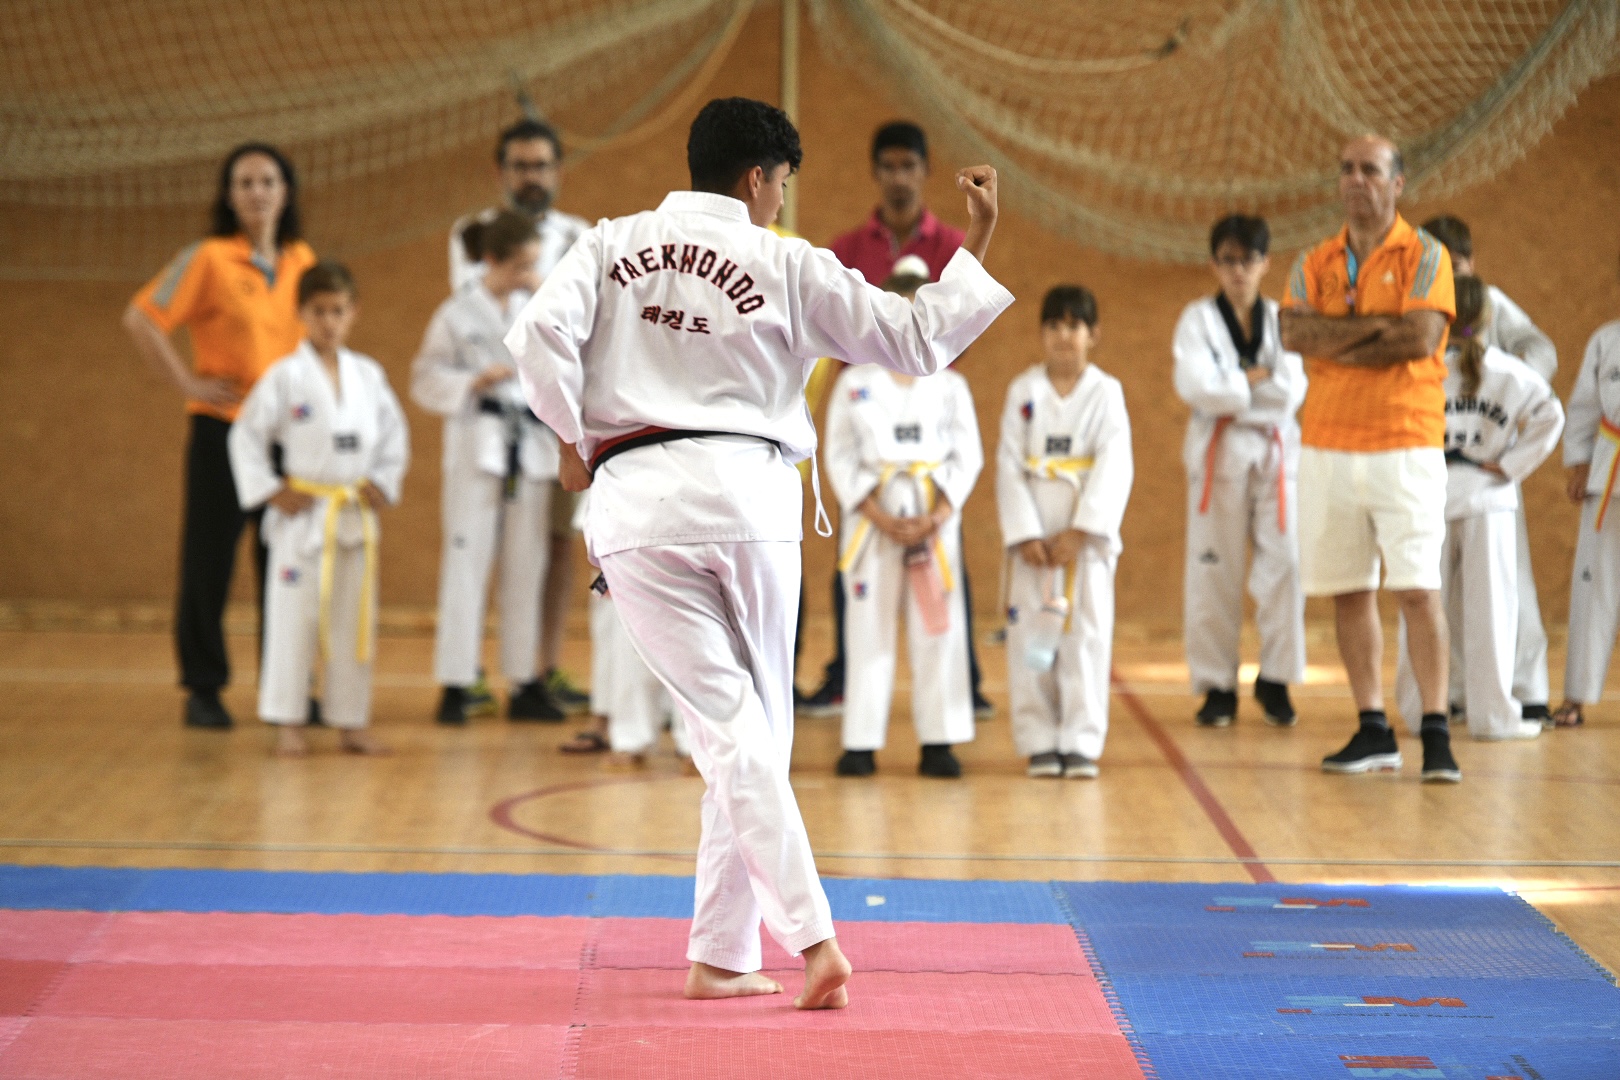 Uno de los participantes en el V Campeonato de Taekwondo.